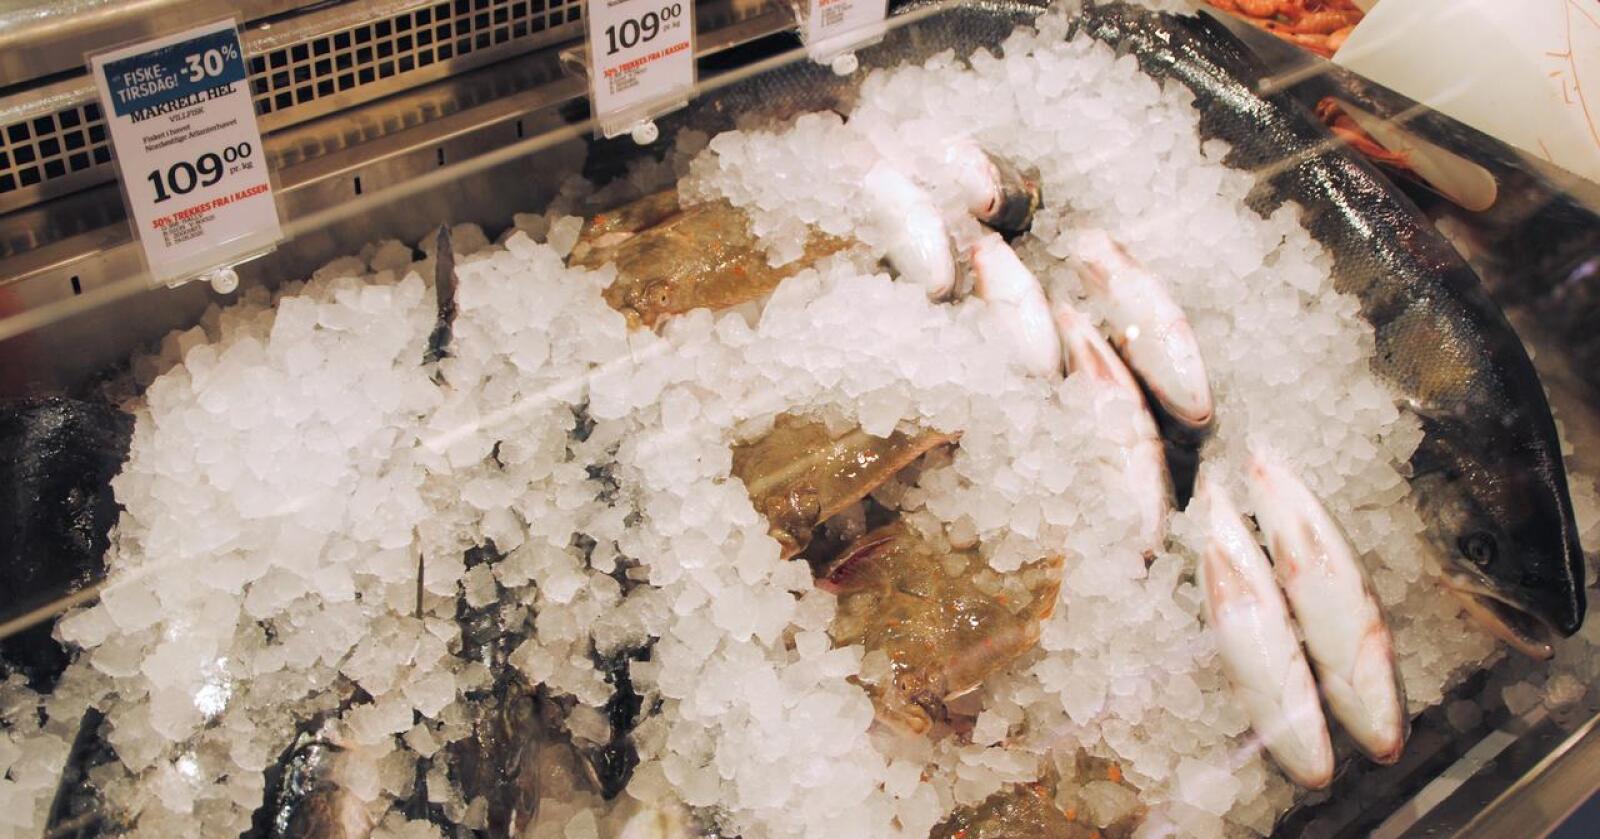 Norge ønsker å få solgt fisk på det britiske markedet. Handelsavtalen har vært utsatt lenge. Foto: Lars Bilit Hagen